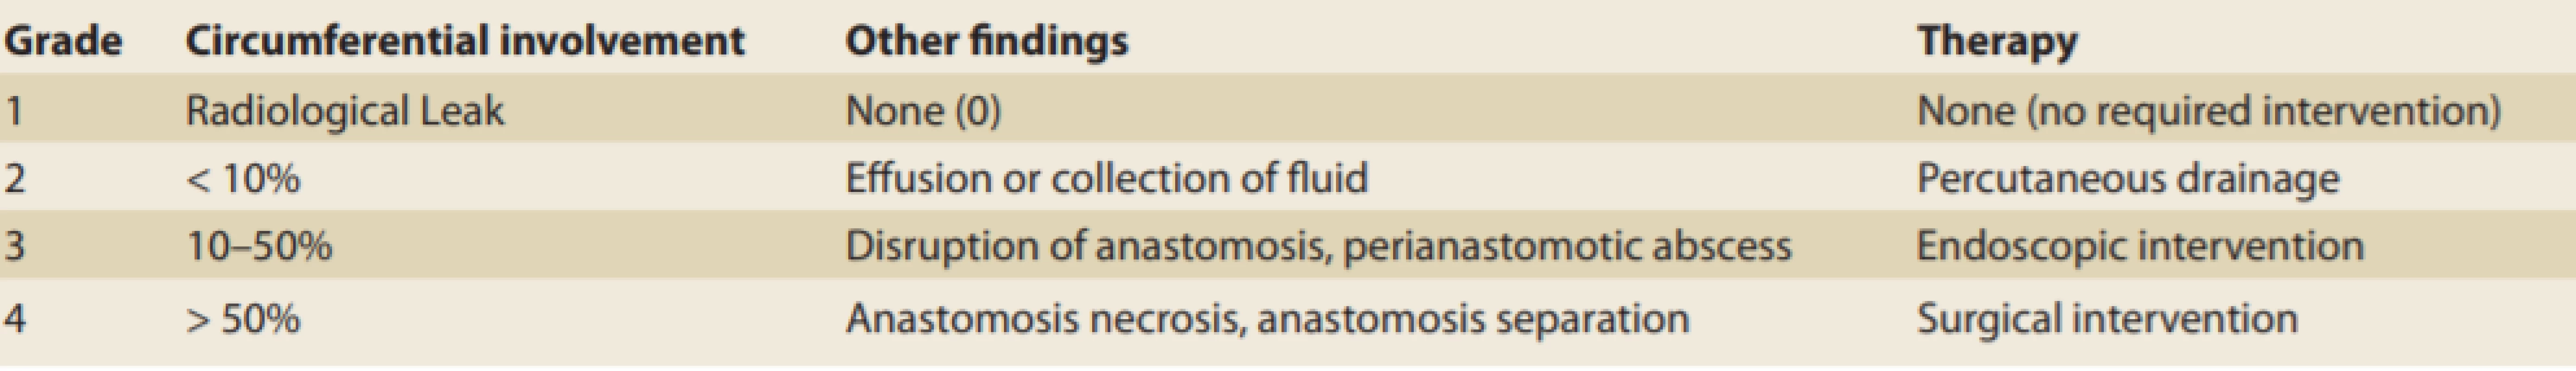 Classification of anastomotic leaks by Schuchert and Carboni.
Tab. 1. Klasifikace anastomotických leaků podle Schucherta a Carboniho.